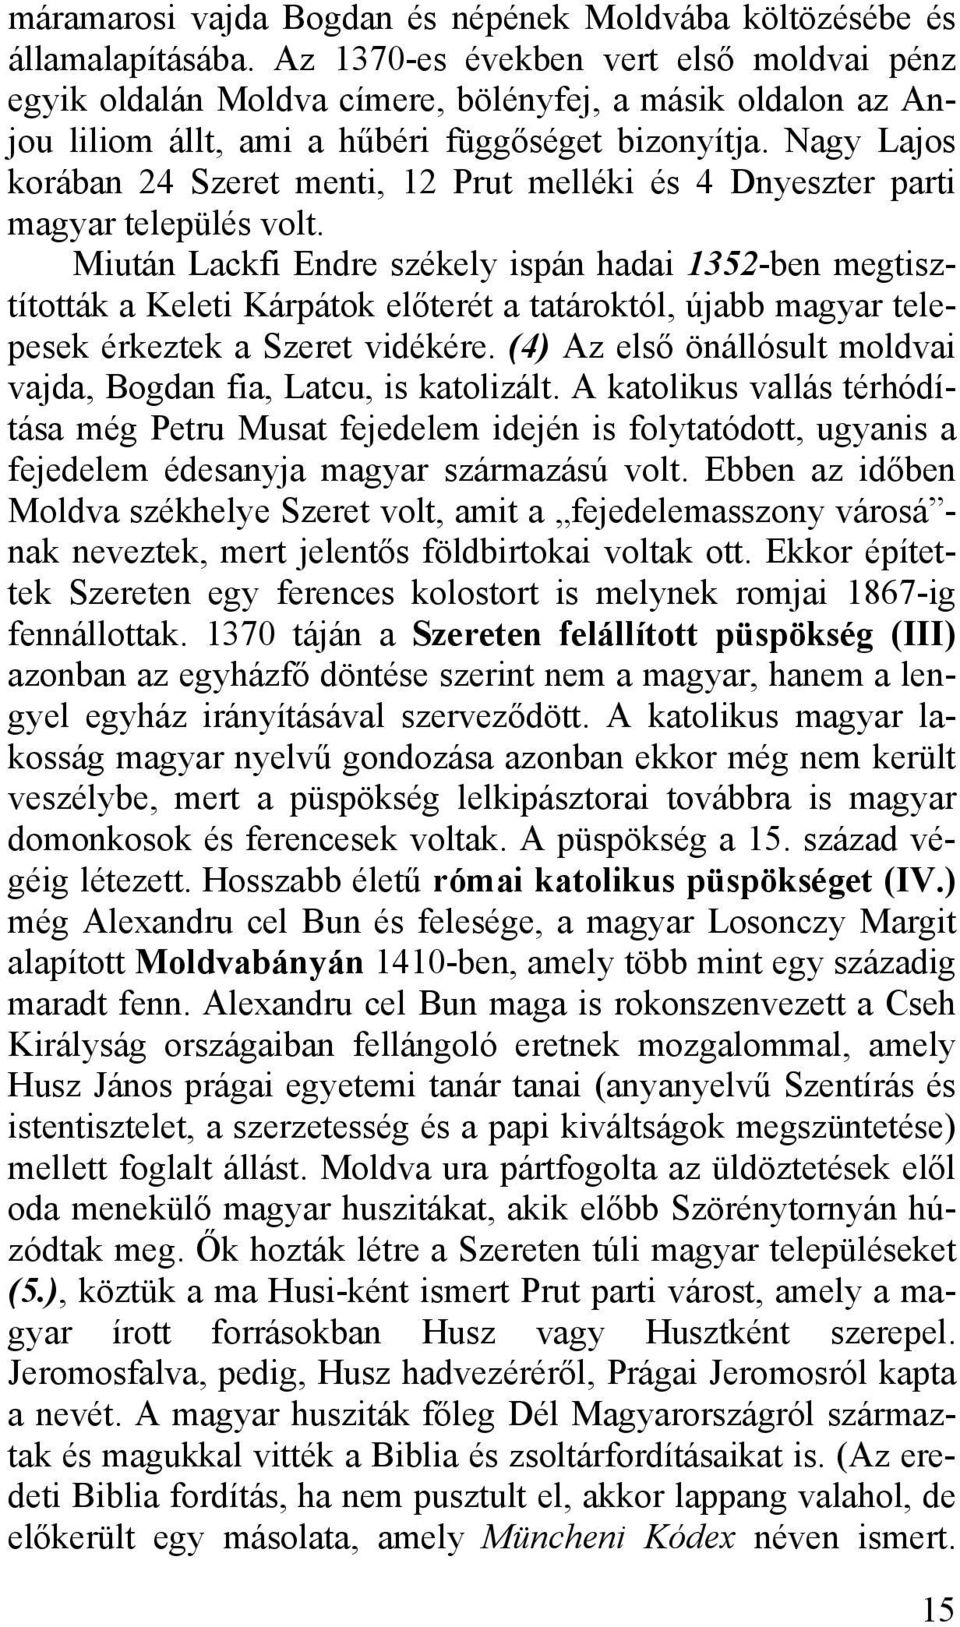 Nagy Lajos korában 24 Szeret menti, 12 Prut melléki és 4 Dnyeszter parti magyar település volt.